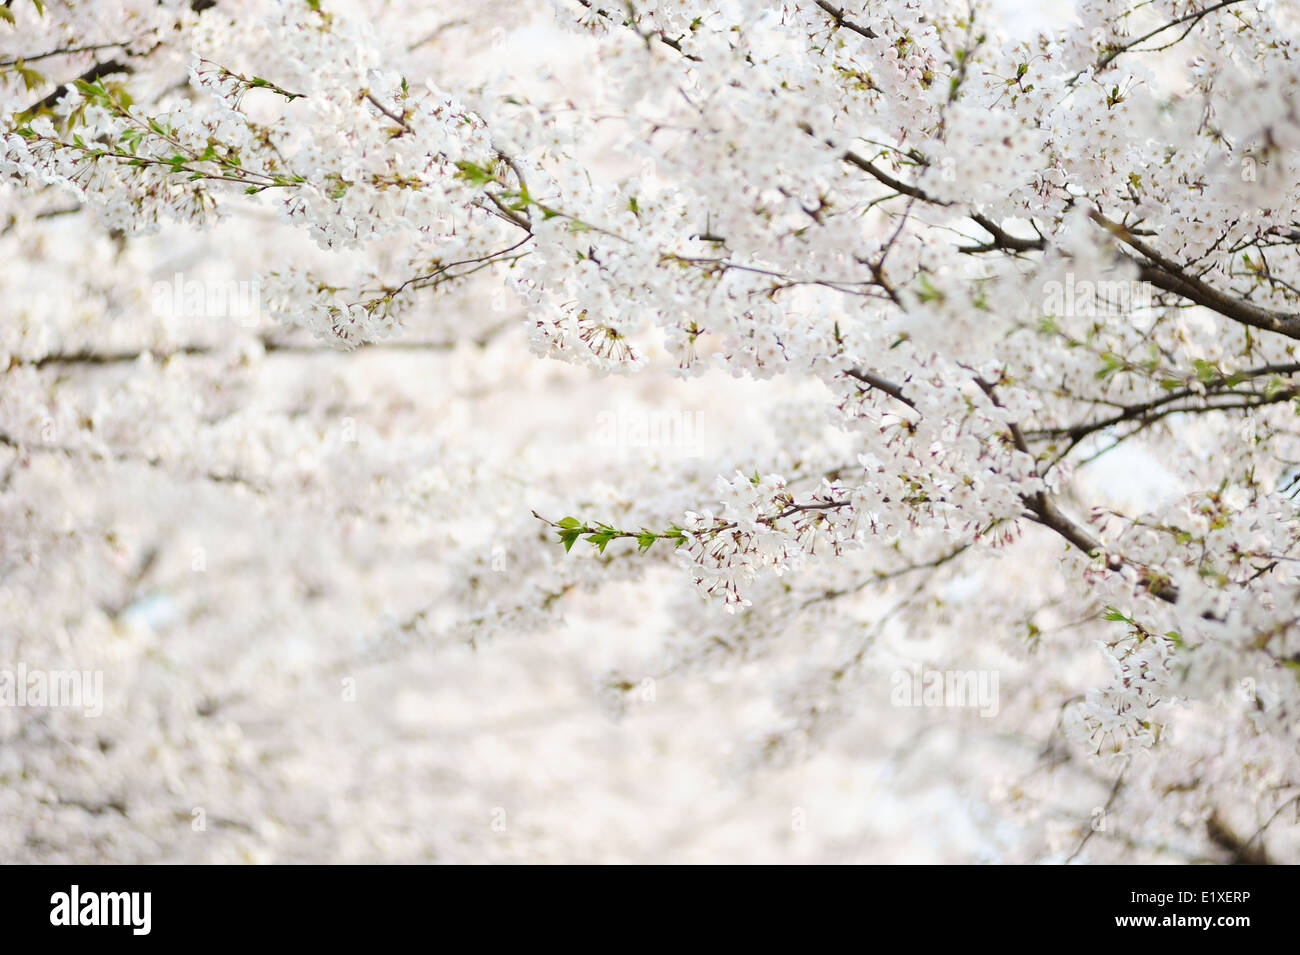 fresh Korean cherry blossoms in full bloom Stock Photo